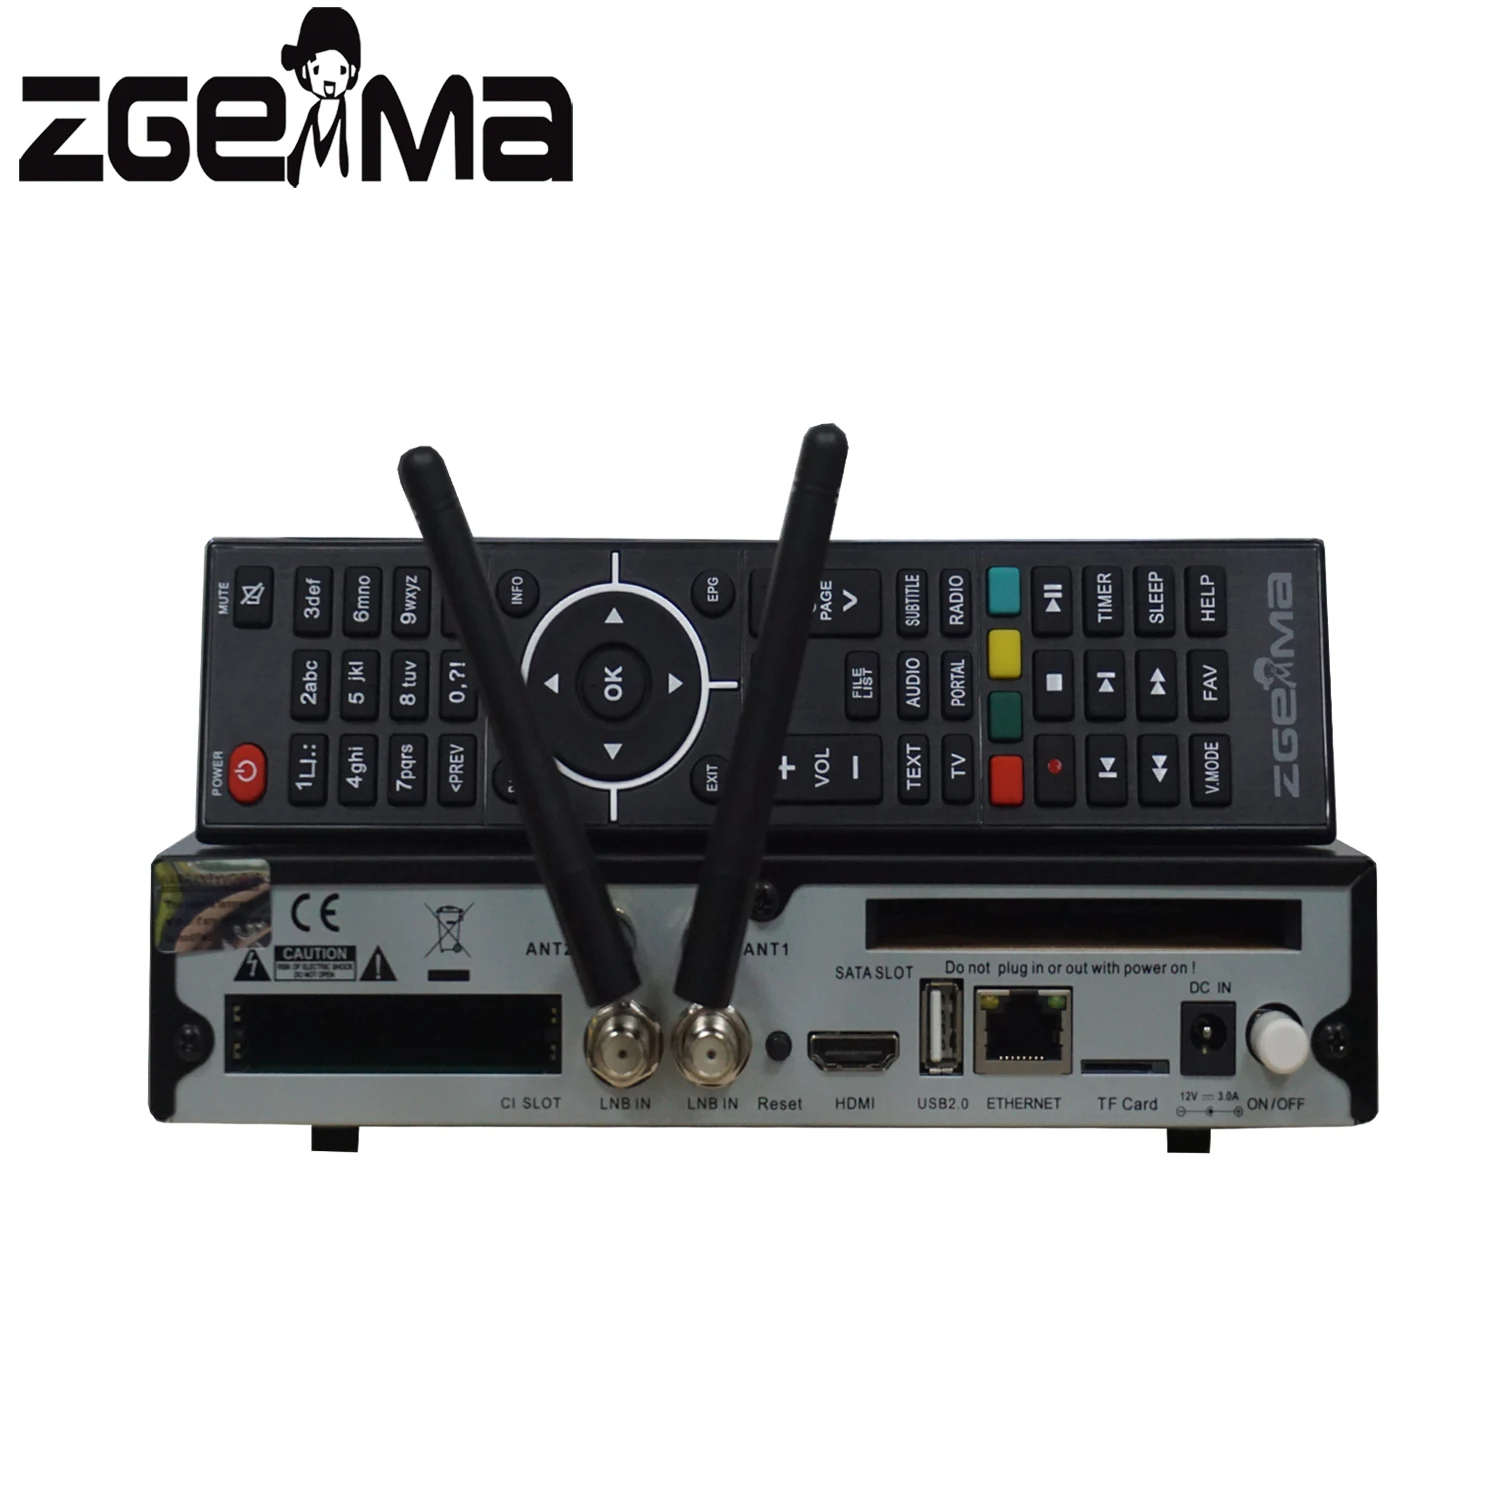 ZGEMMA H9 Twin with 2 x DVB-S2X Tuners 2 x CI 2 x WiFi Antenna E2 Linux 4K UHD 